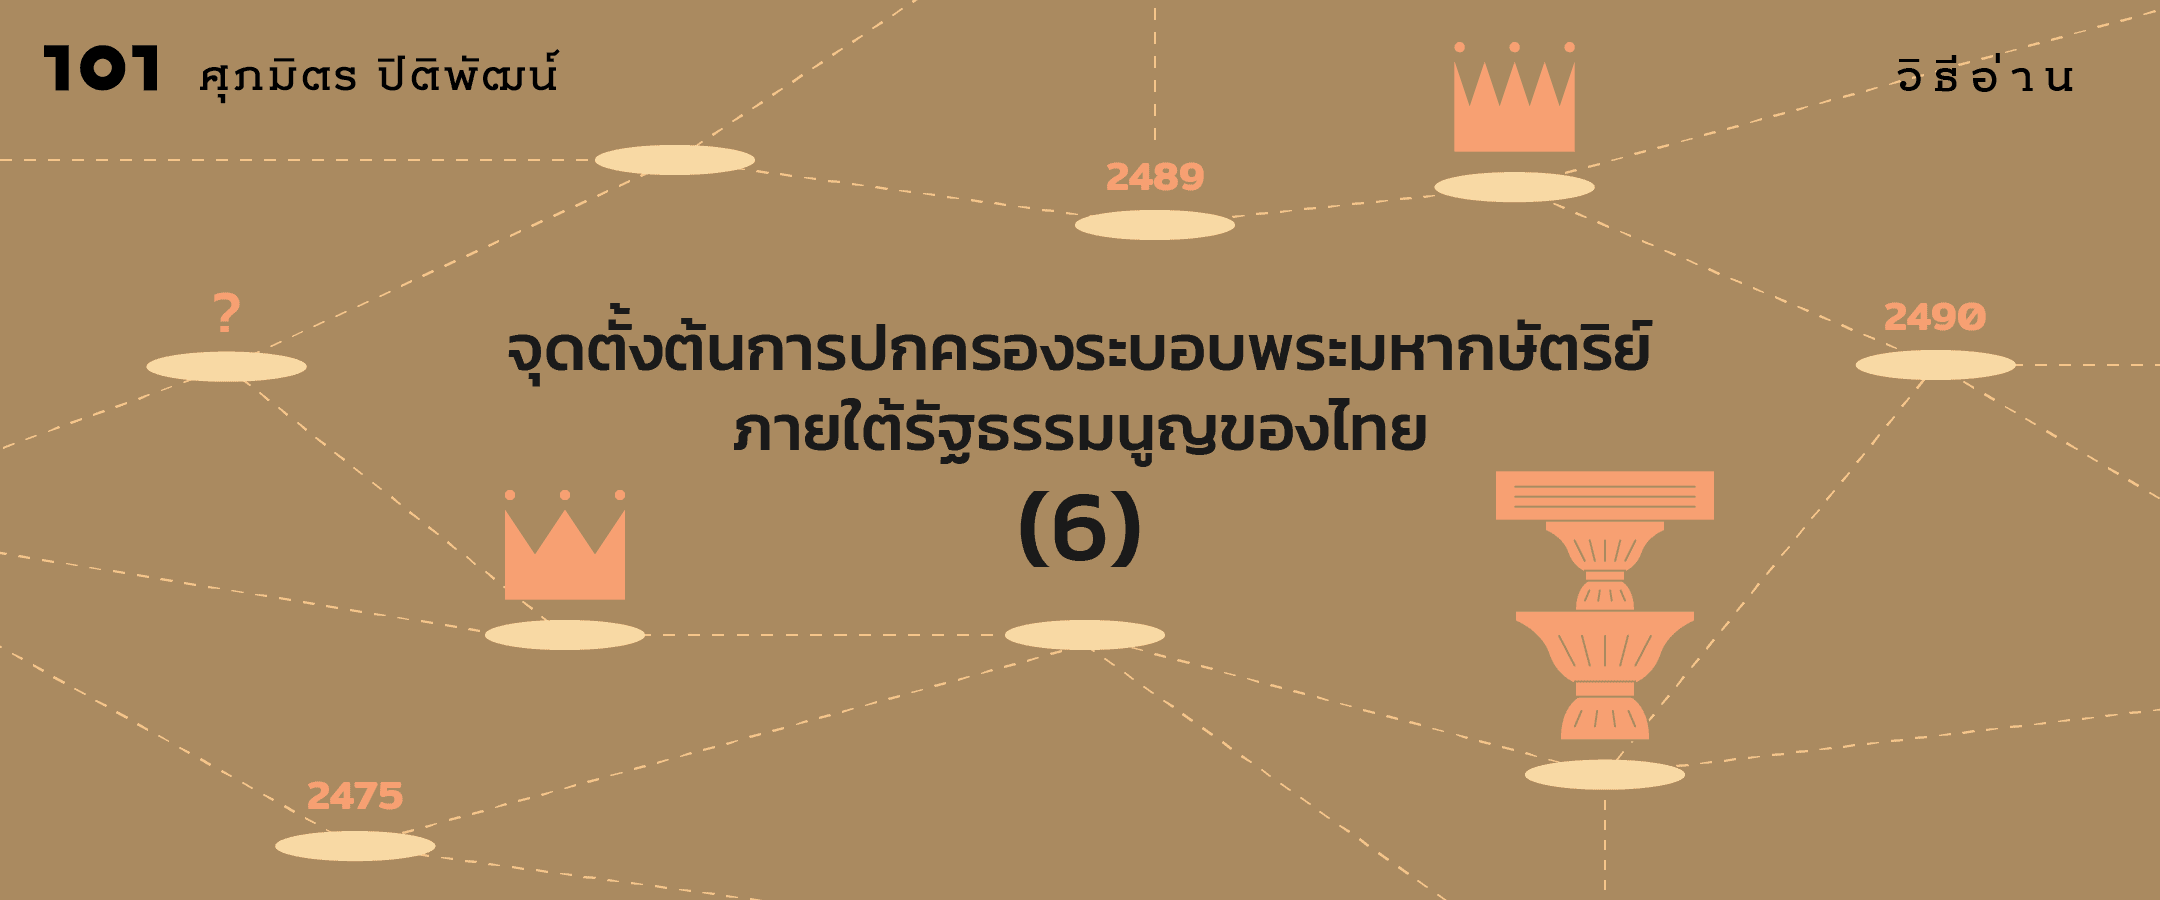 จุดตั้งต้นการปกครองระบอบพระมหากษัตริย์ภายใต้รัฐธรรมนูญของไทย (ตอนจบ)